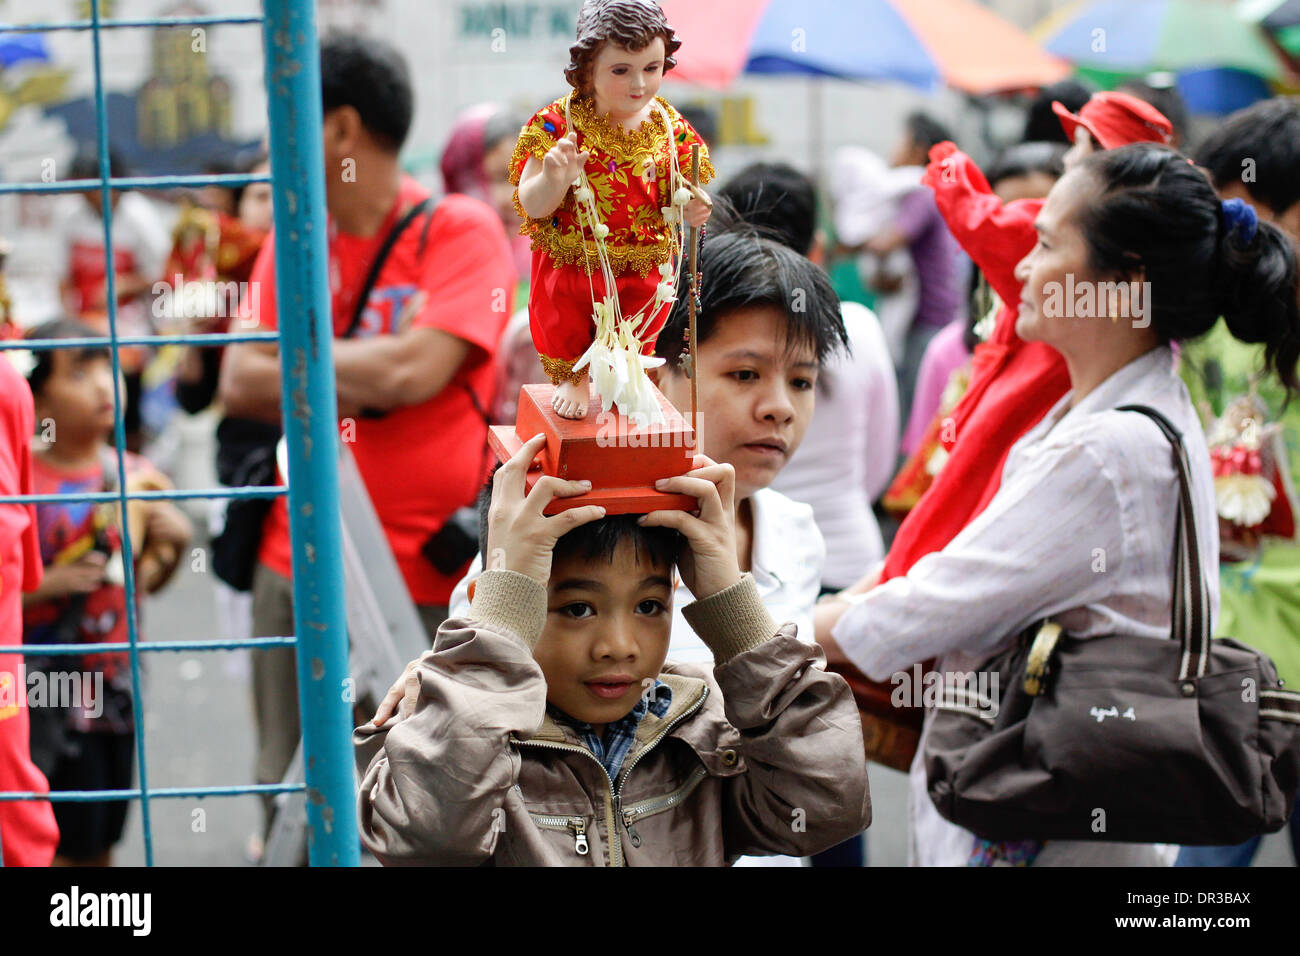 Manila, Filipinas. Del 19 de enero del 2014. Los devotos católicos celebran la fiesta del Santo Nino en Manila, Filipinas. Crédito: Mark Fredesjed Cristino/Alamy Live News Foto de stock